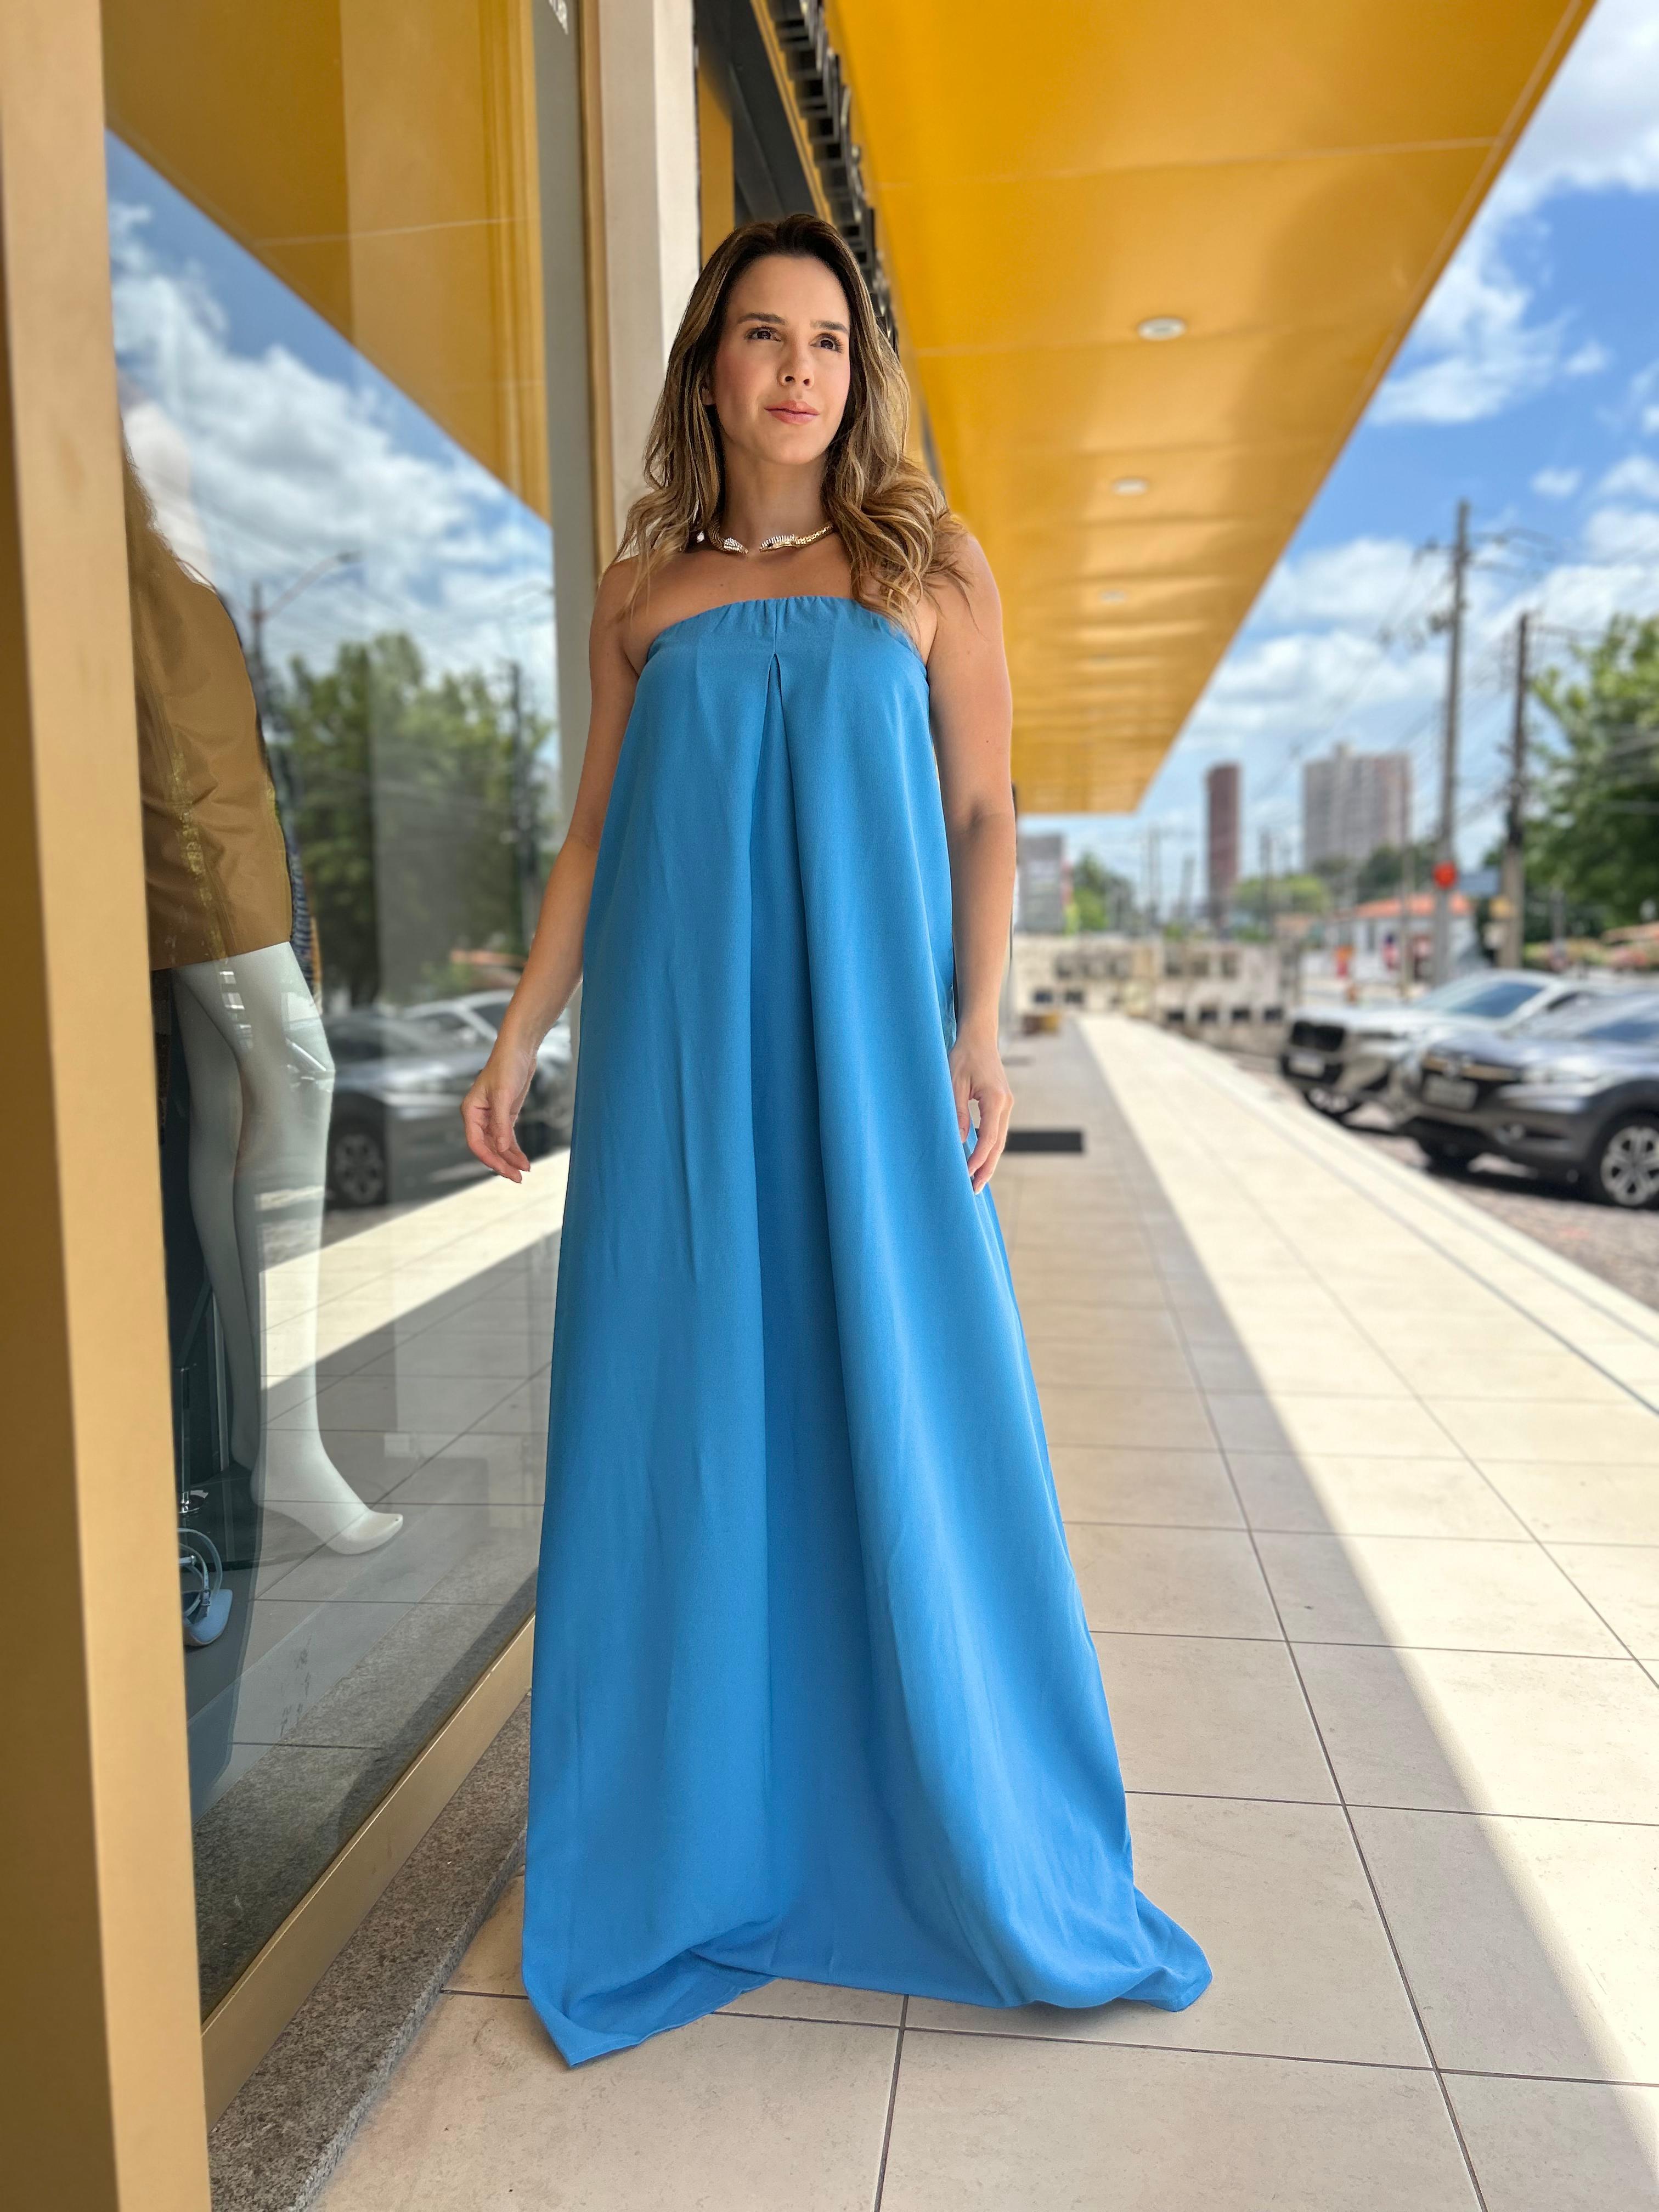 Vestido Tomara que Caia Carlota Costa Azul Claro - Imagem 2